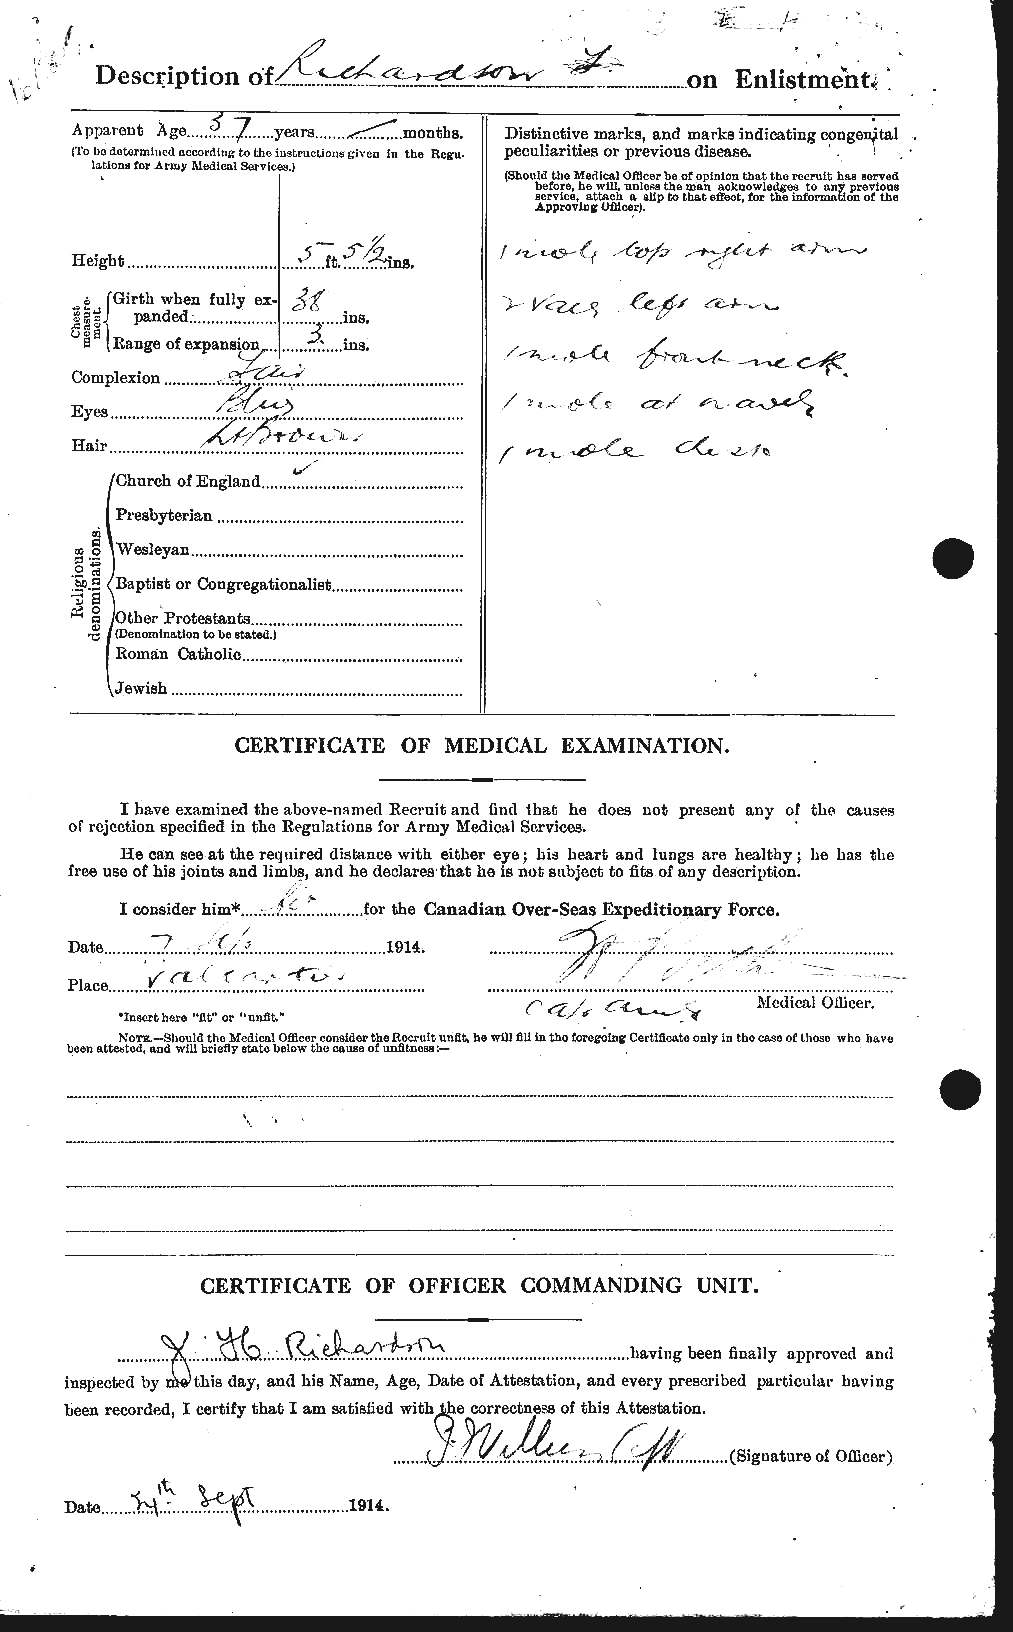 Dossiers du Personnel de la Première Guerre mondiale - CEC 605061b